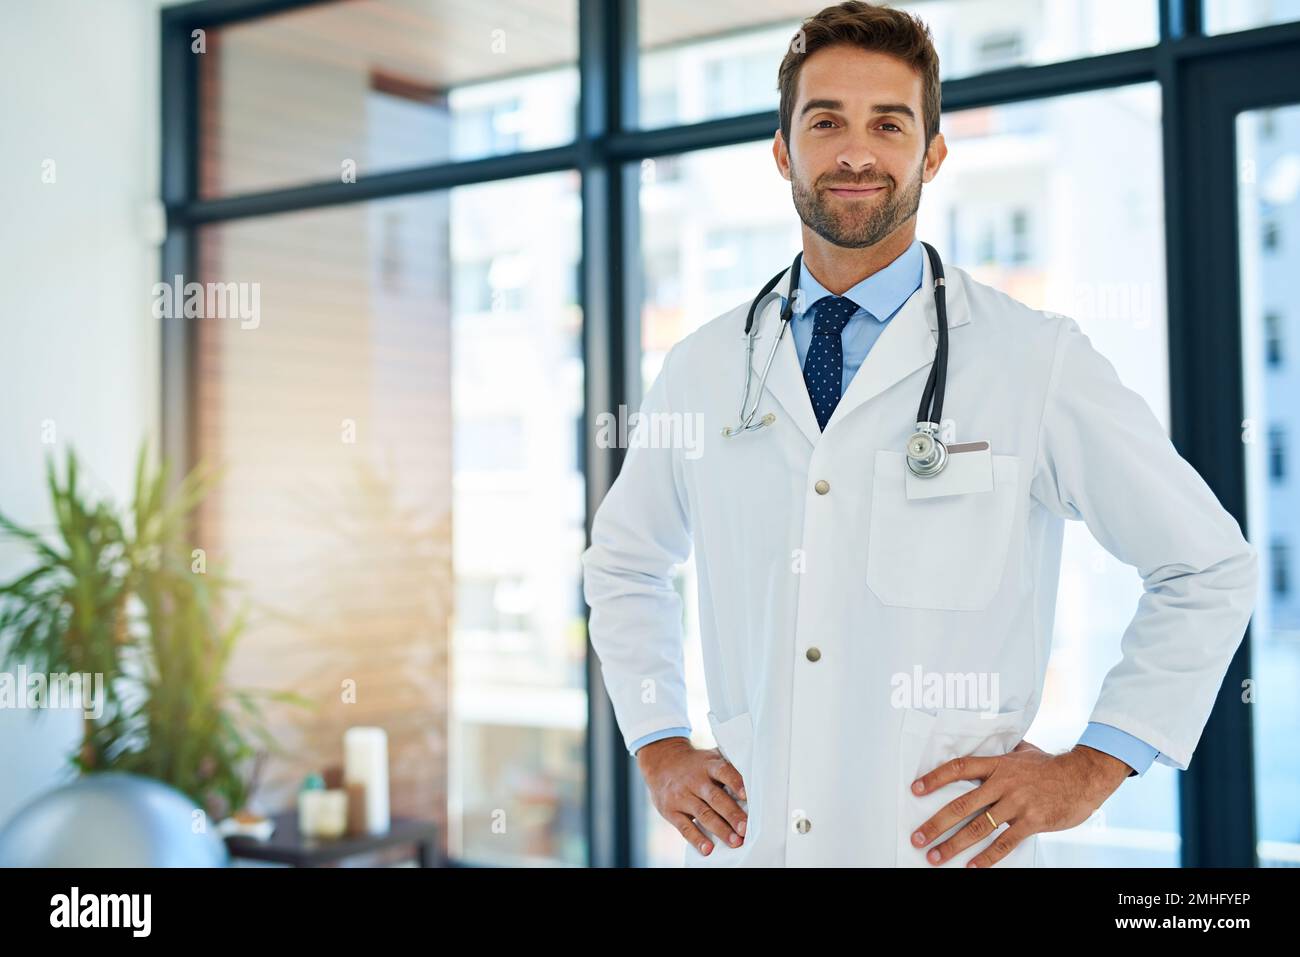 Im il meglio a quello che faccio. Ritratto di un giovane medico fiducioso in posa con le mani sui fianchi in un ospedale. Foto Stock